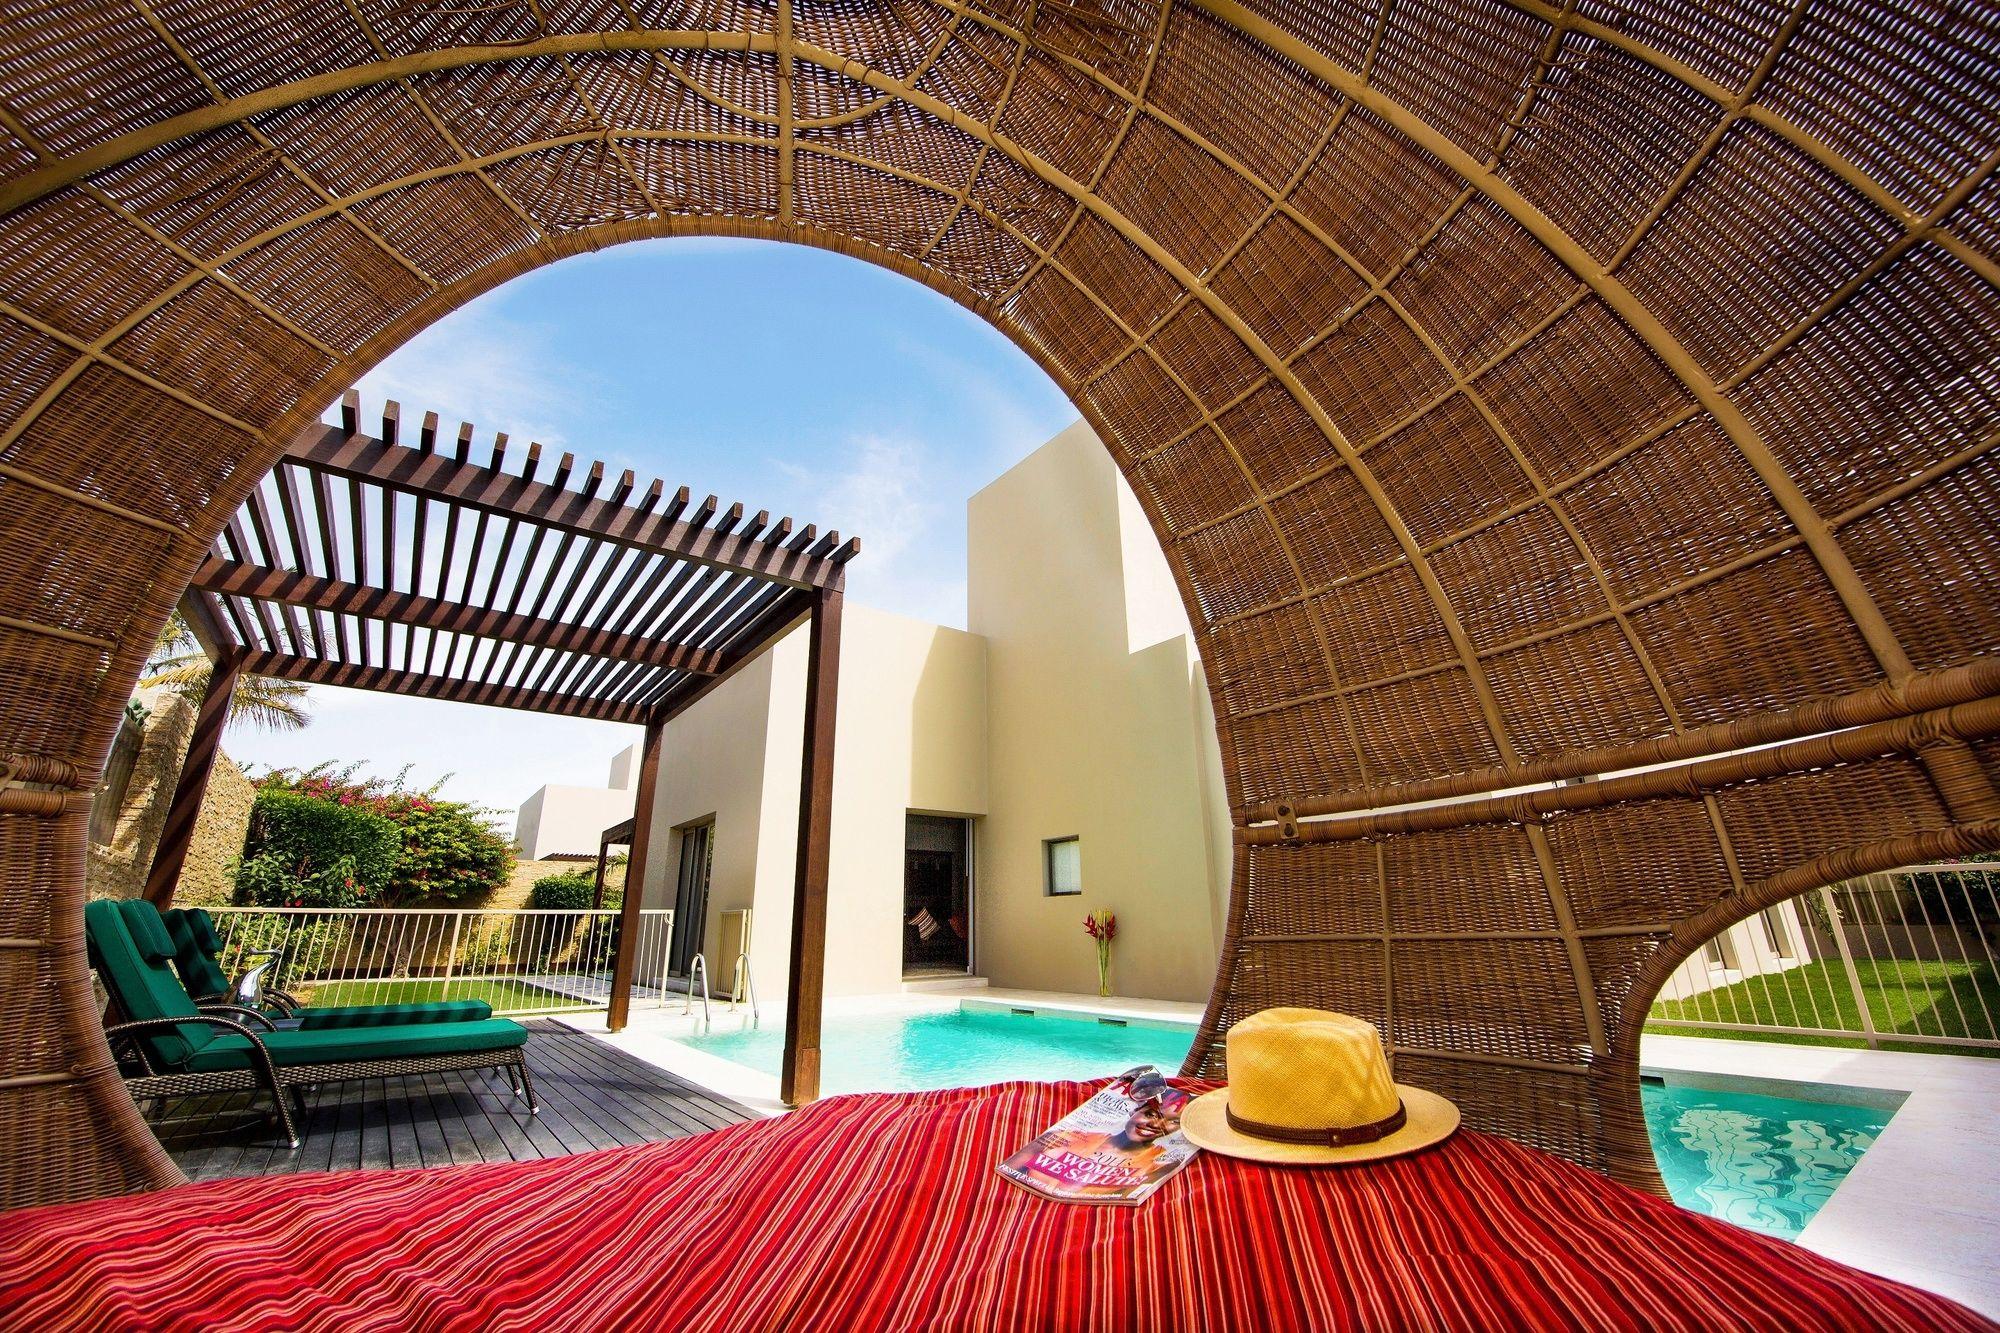 Comodidades do quarto PER AQUUM Desert Palm - Dubai